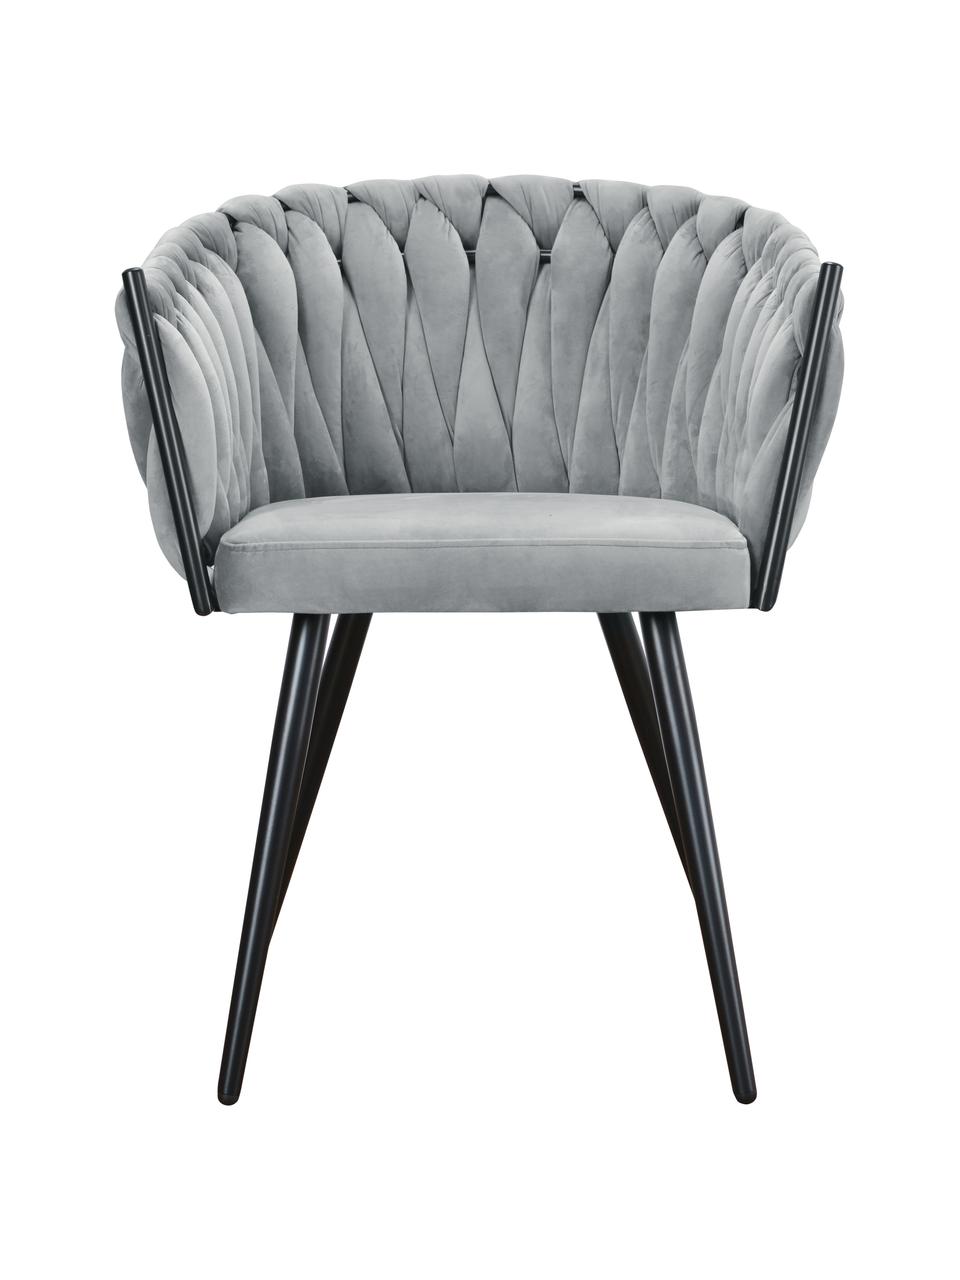 Krzesło z podłokietnikami z aksamitu Larissa, Tapicerka: aksamit (100% poliester), Nogi: metal, Aksamitny szary, nogi: czarny, S 63 x G 55 cm